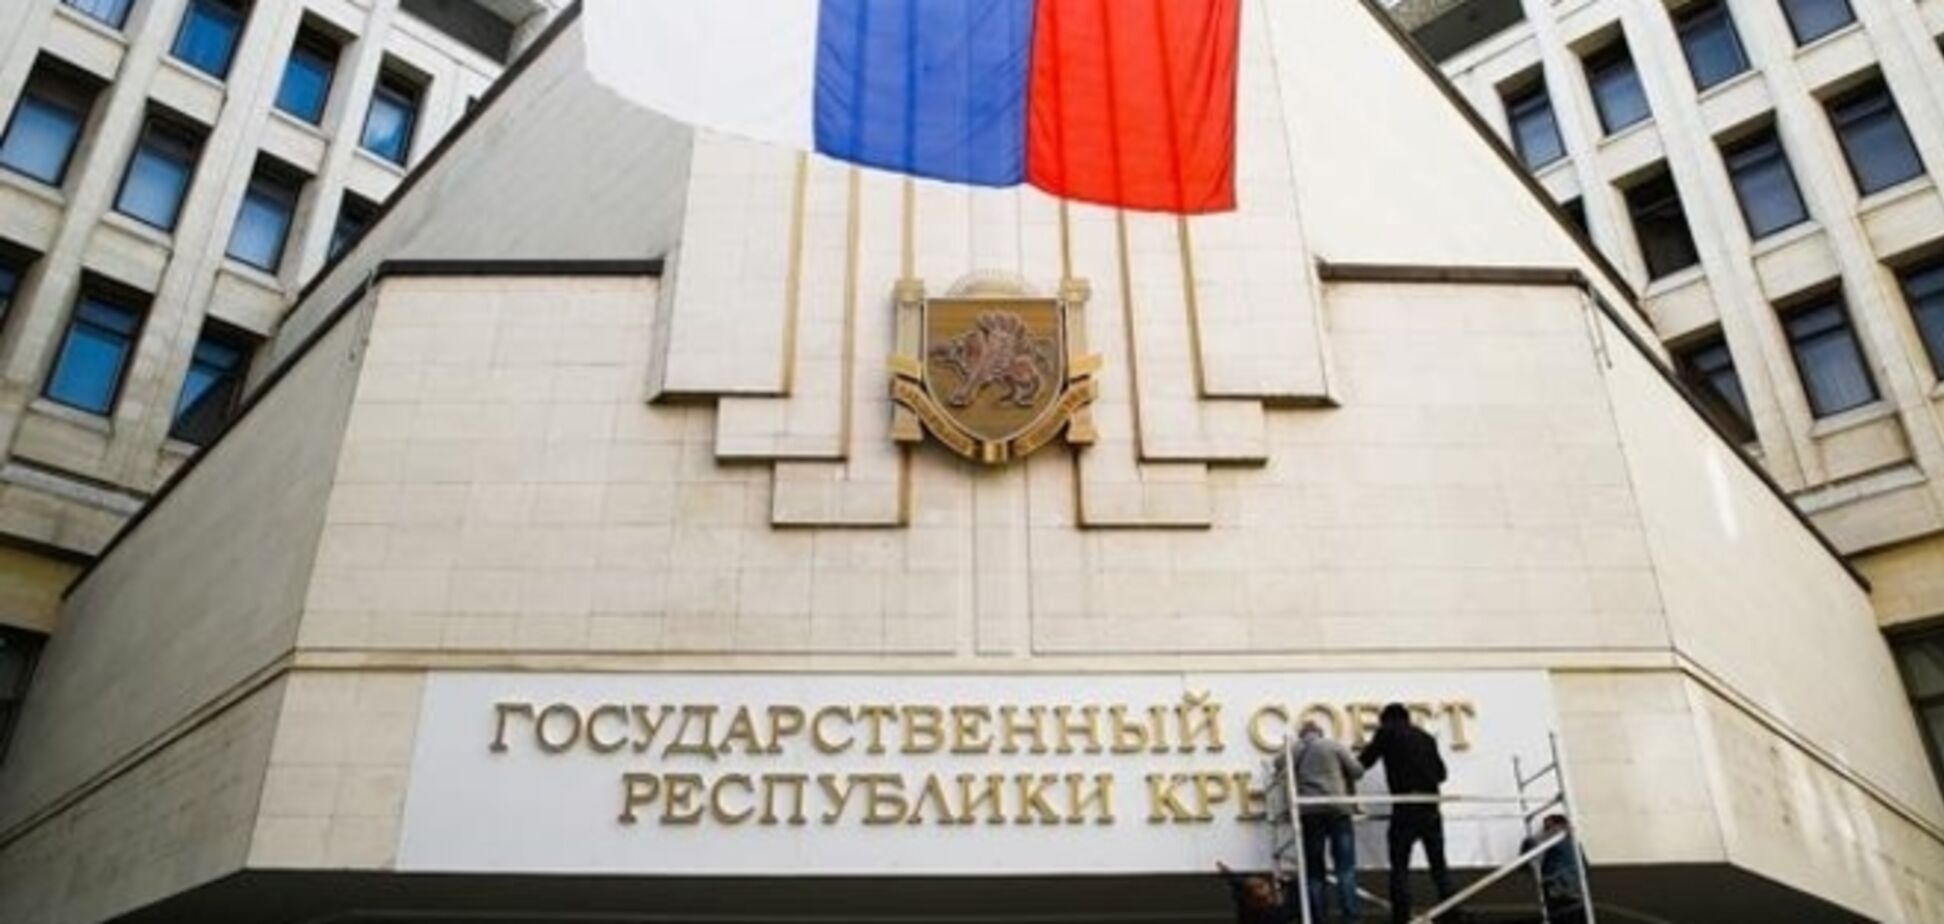 Евросоюз может запретить финансовые операции с банками в Крыму